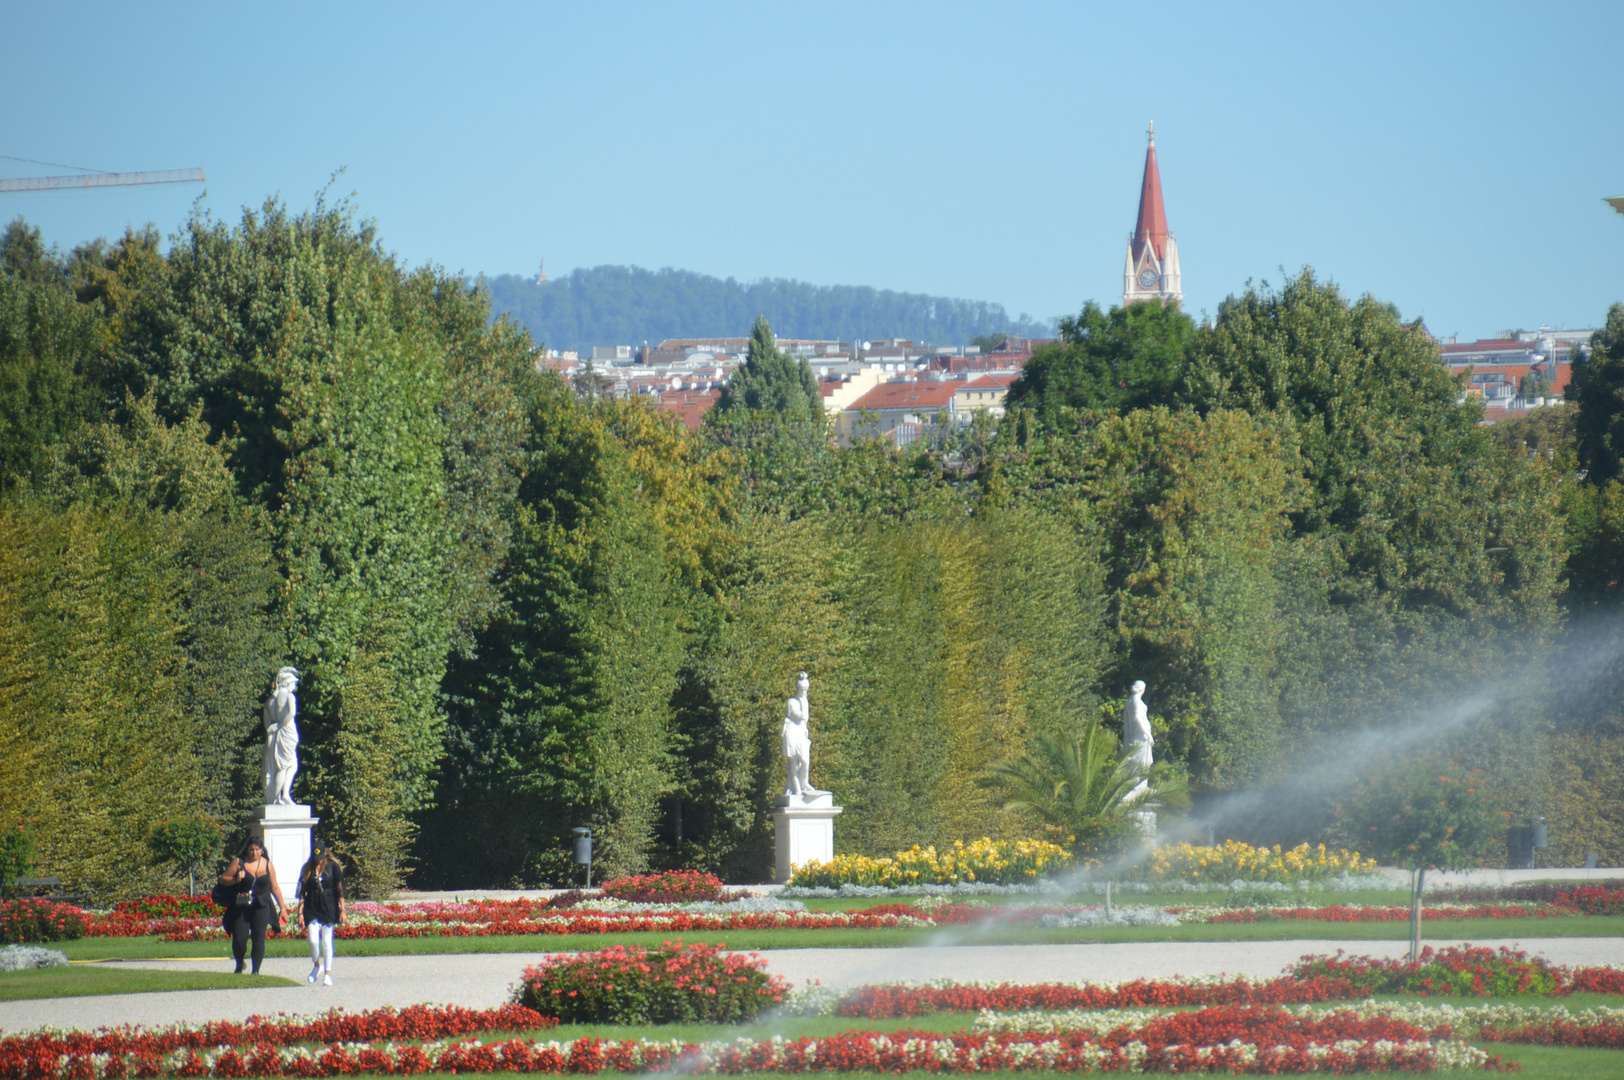 Schlossparkanlage - Schloss Schönbrunn